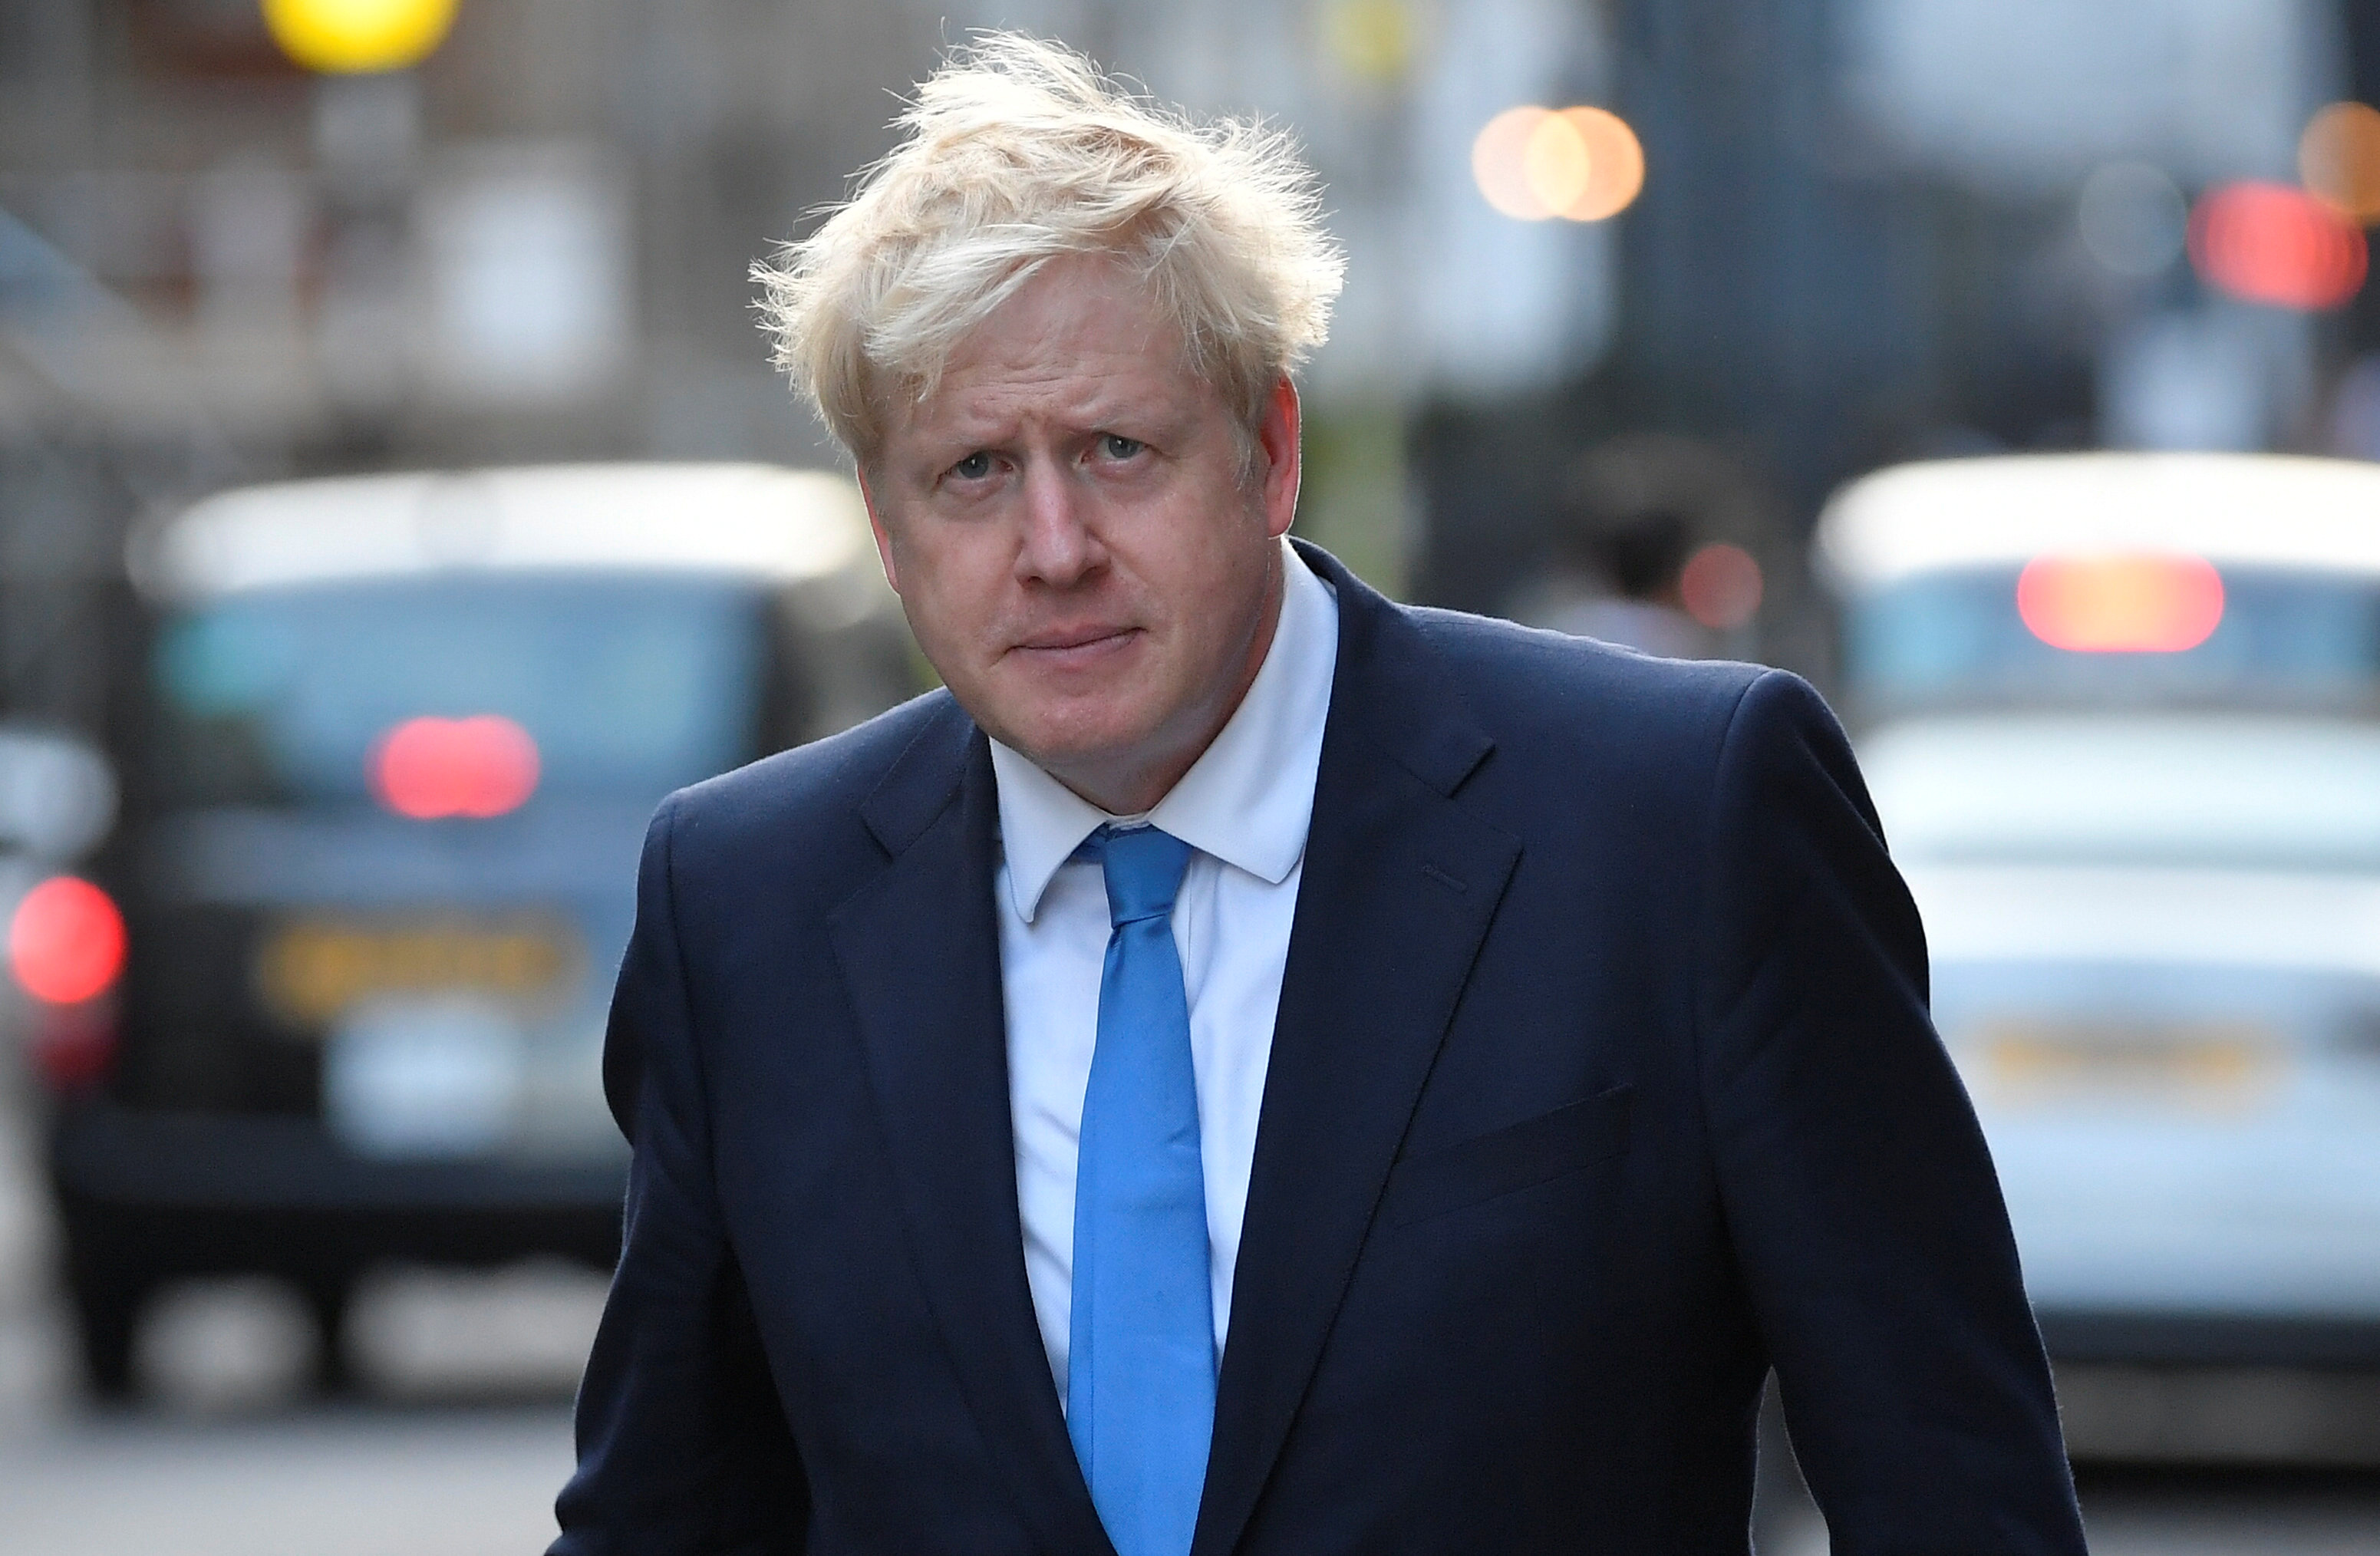 Suspensión del parlamento por Boris Johnson fue “ilegal”, decide Corte Suprema